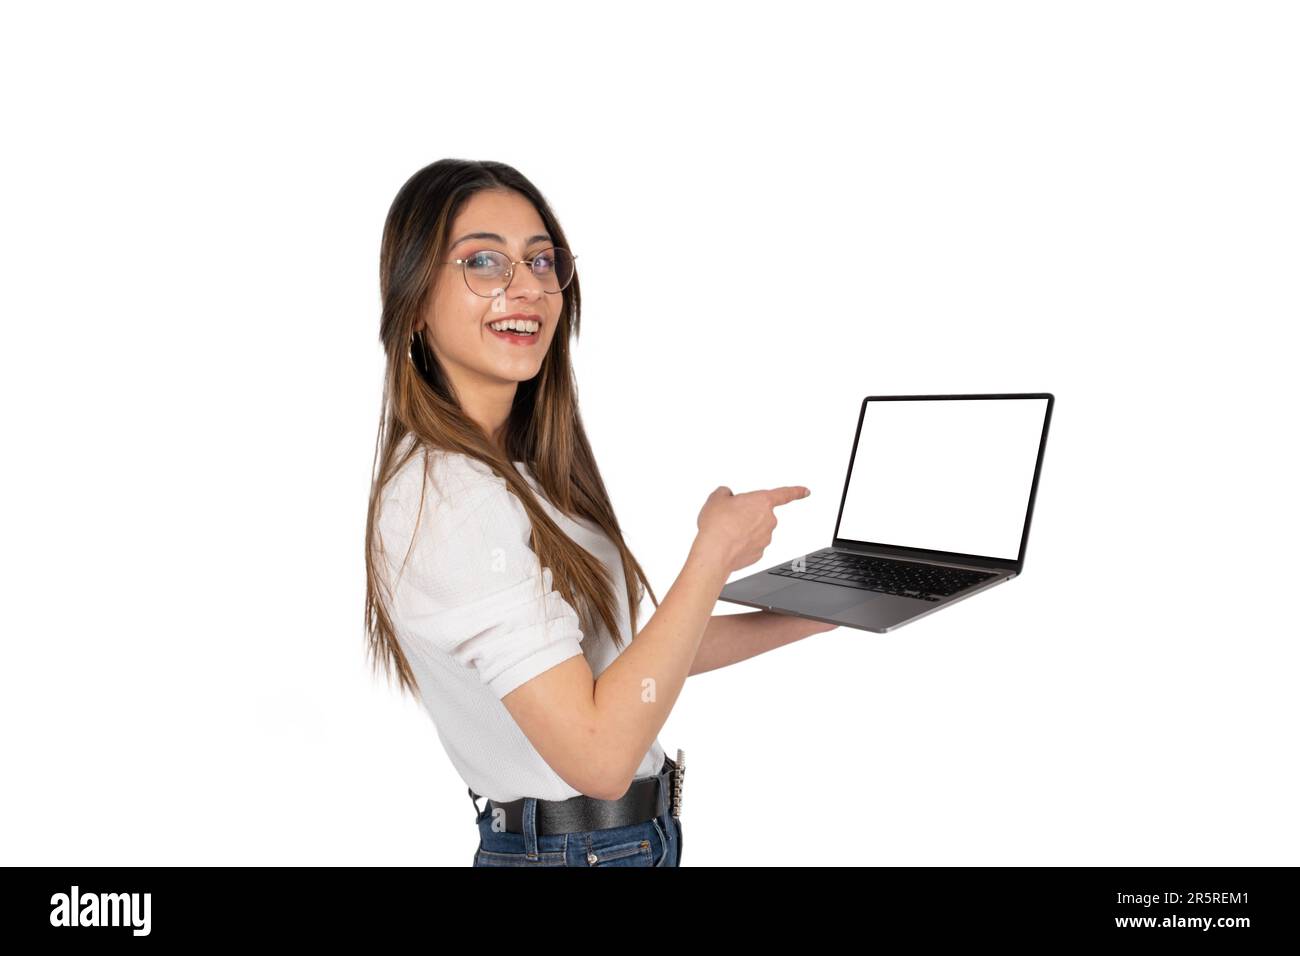 Schermo di puntamento del notebook, ritratto di donna caucasica dei 20 anni che punta lo schermo del notebook. Donna che possiede un moderno notebook con un mockup vuoto per il sito Web Foto Stock